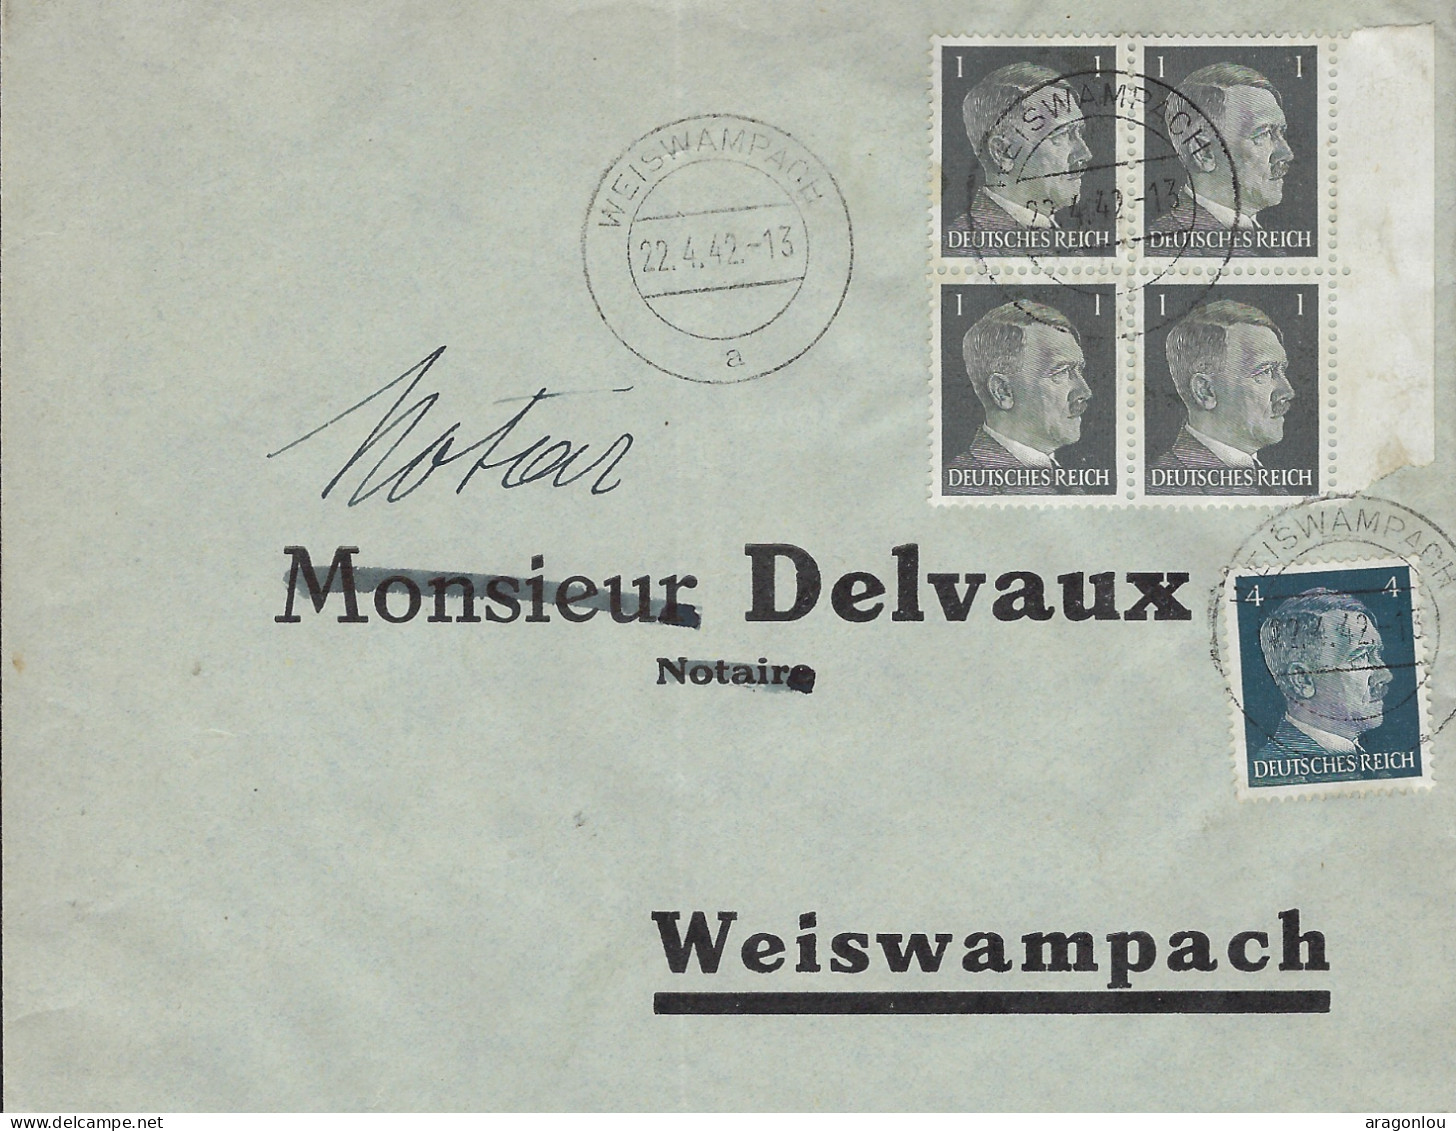 Luxembourg - Luxemburg - Lettre    1942   Occupation - Adressiert An  Notar Delvaux , Weiswampach - 1940-1944 Occupation Allemande